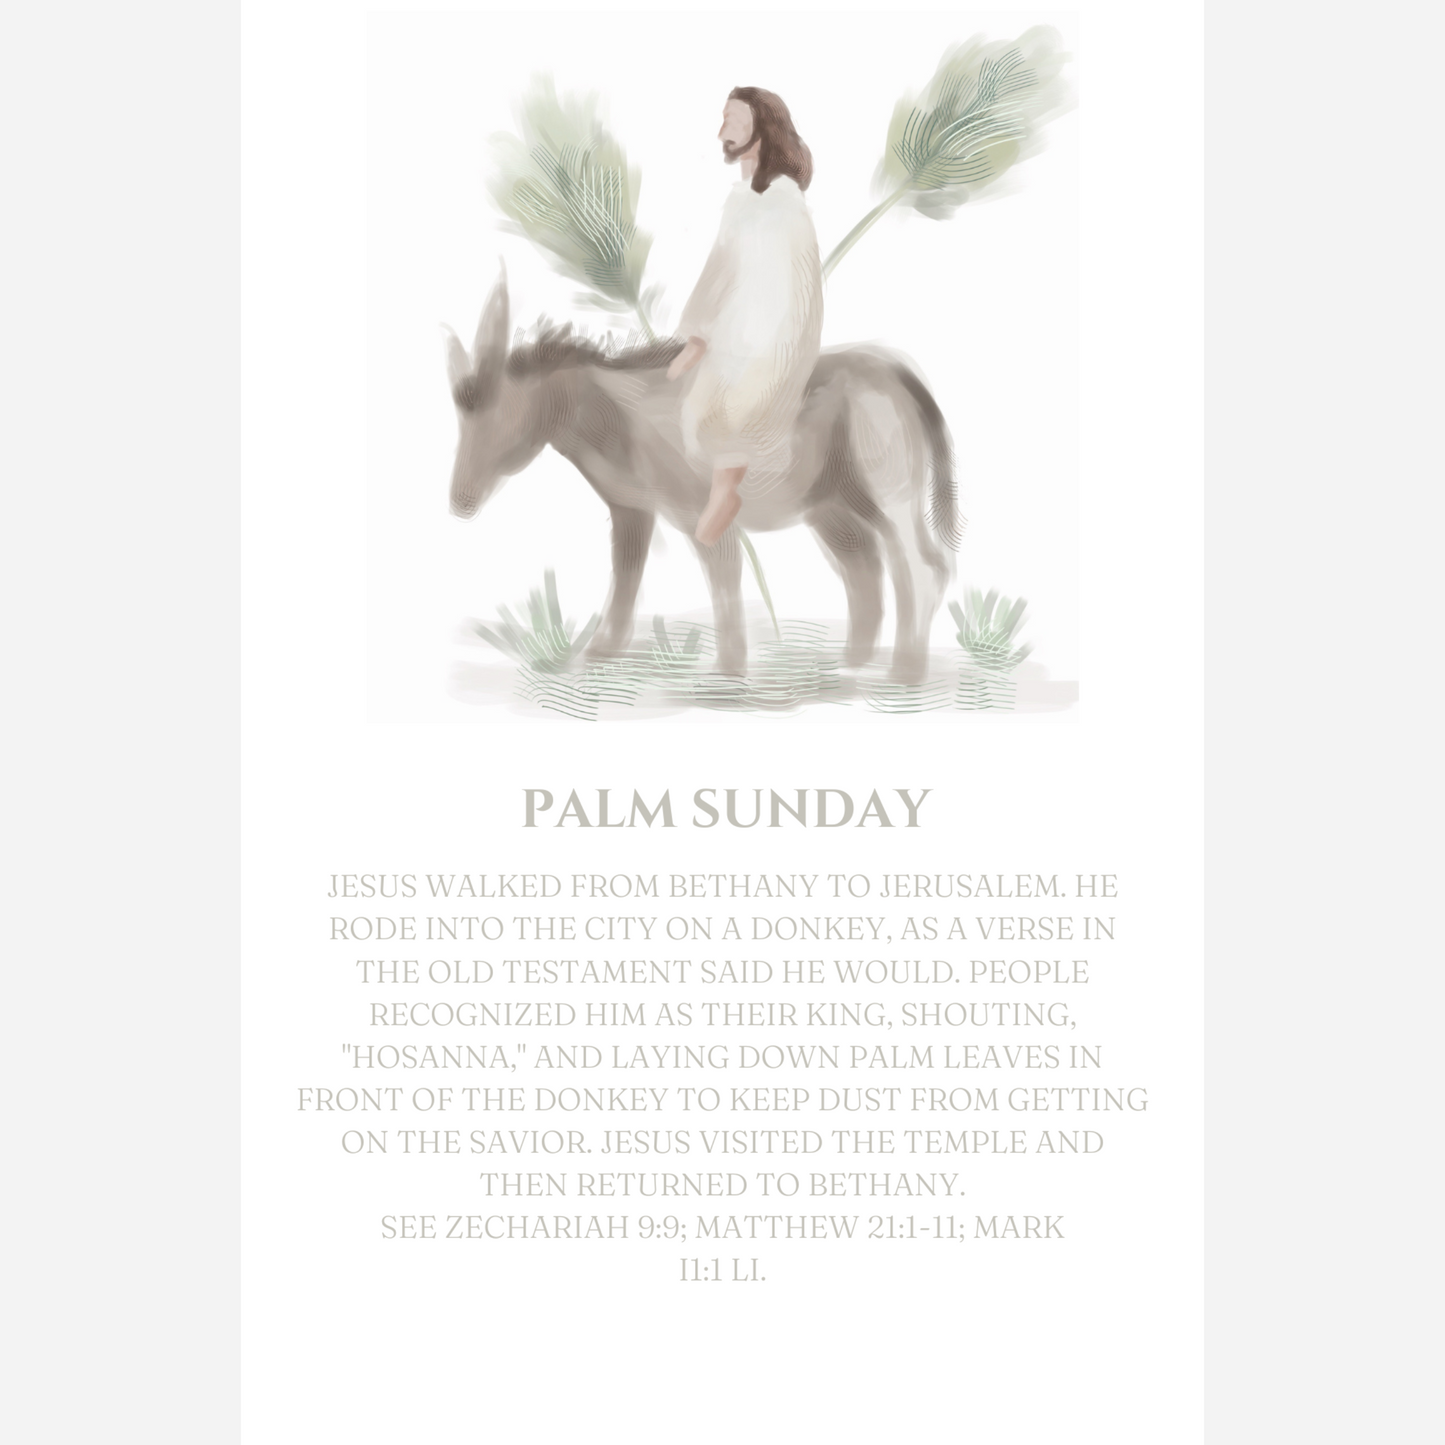 Easter Card Set - Digital Download